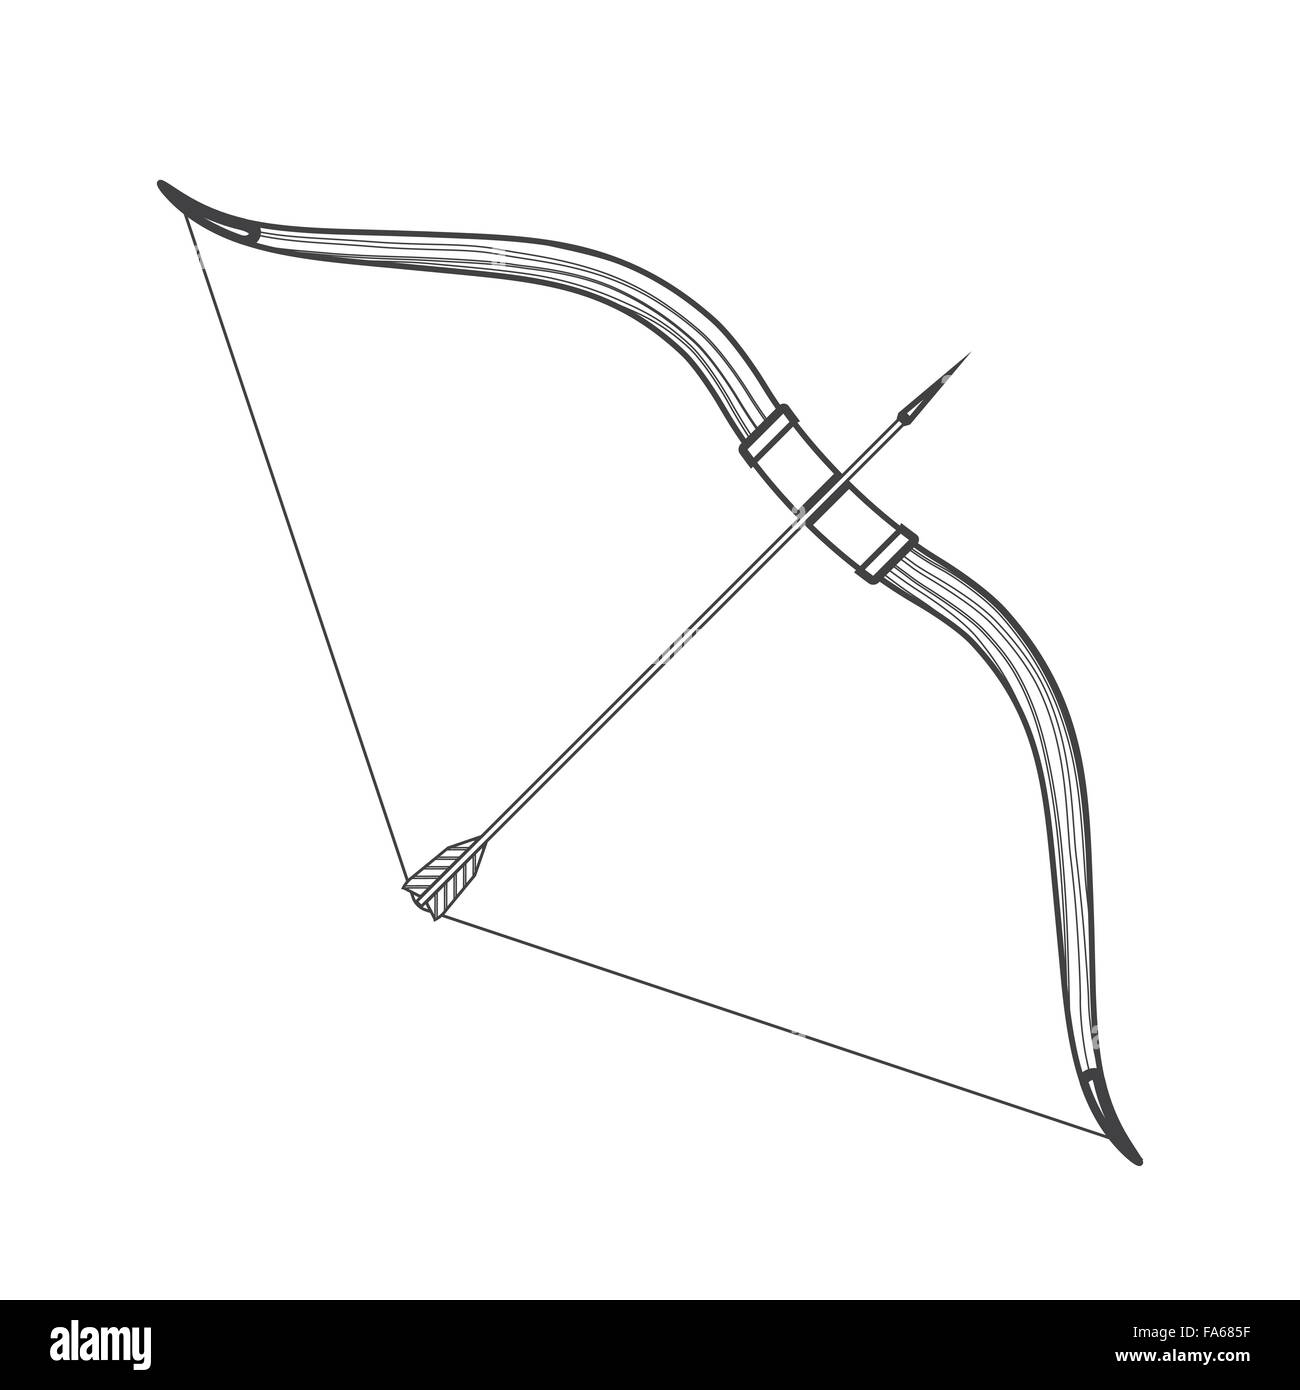 Contour en bois monochrome vecteur médiévale arc et flèche noire illustration isolé sur fond blanc Illustration de Vecteur